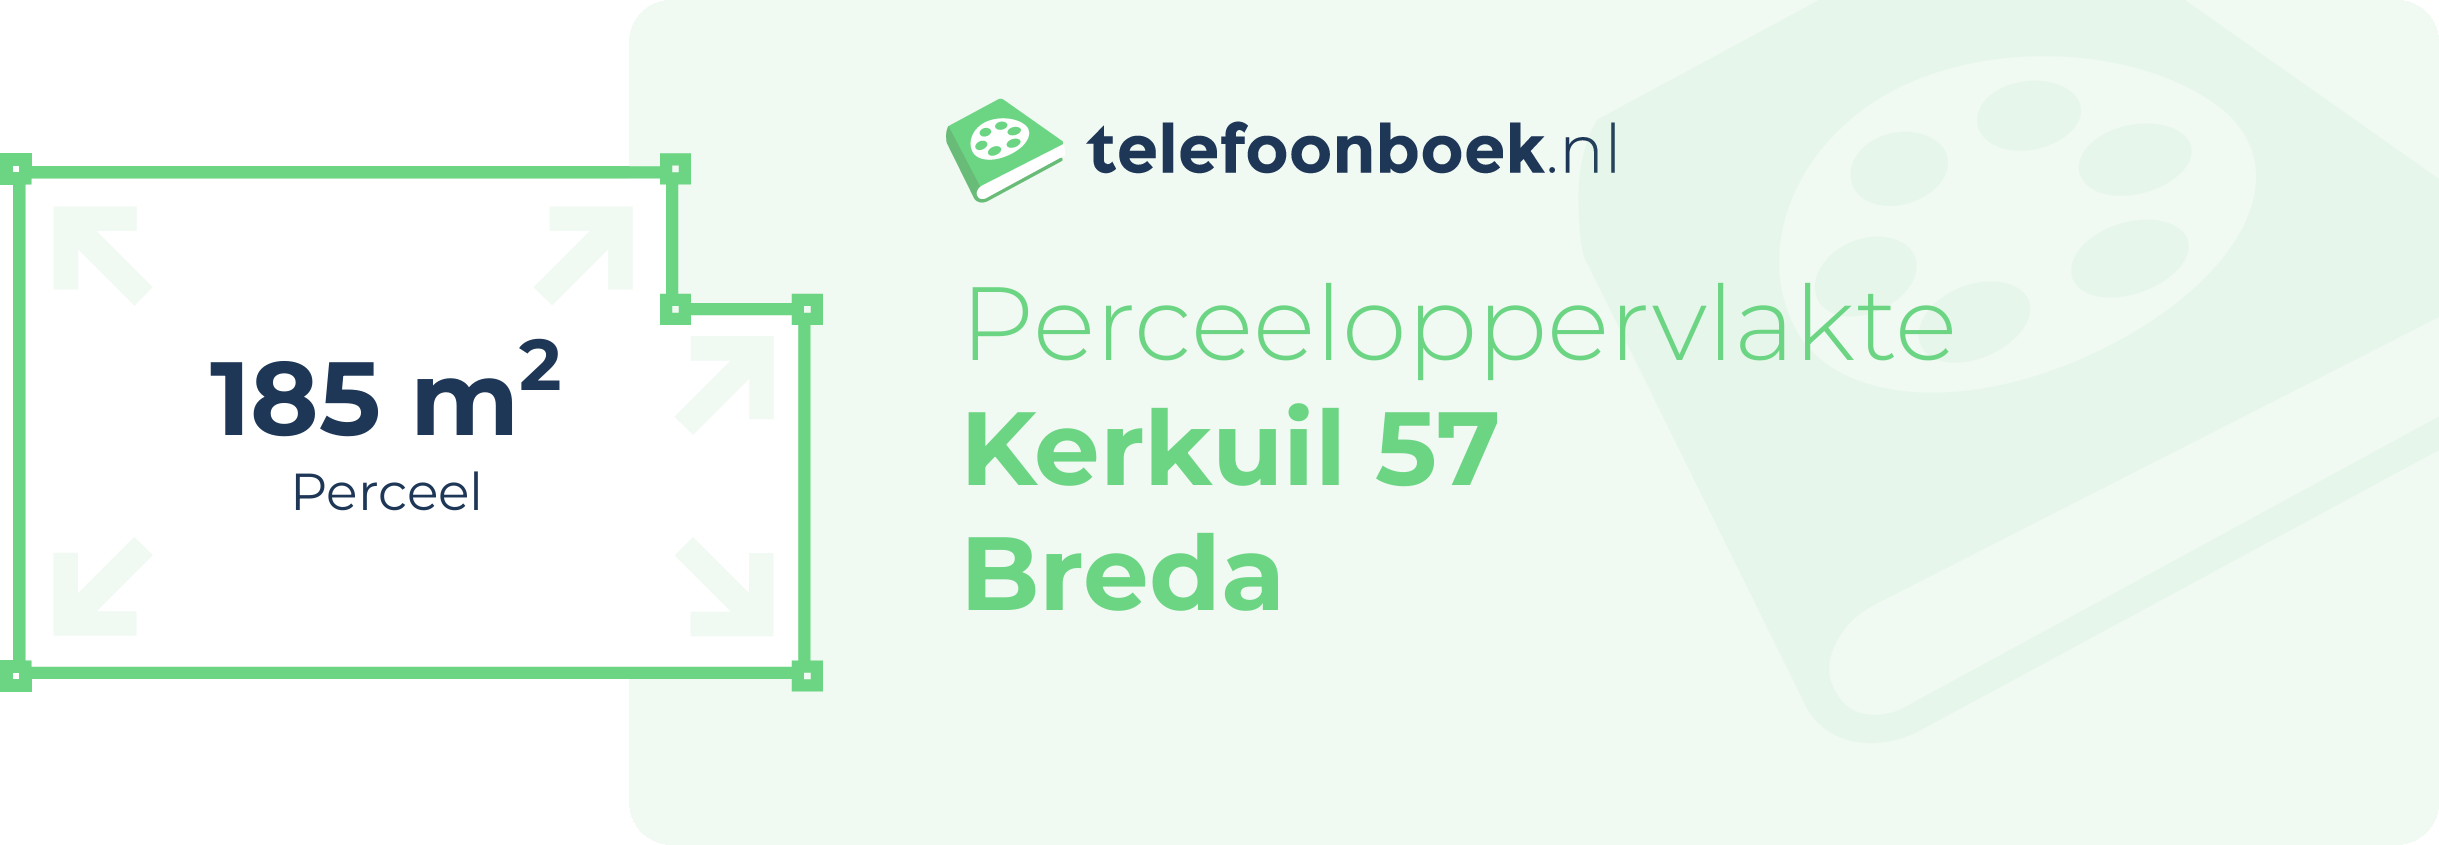 Perceeloppervlakte Kerkuil 57 Breda